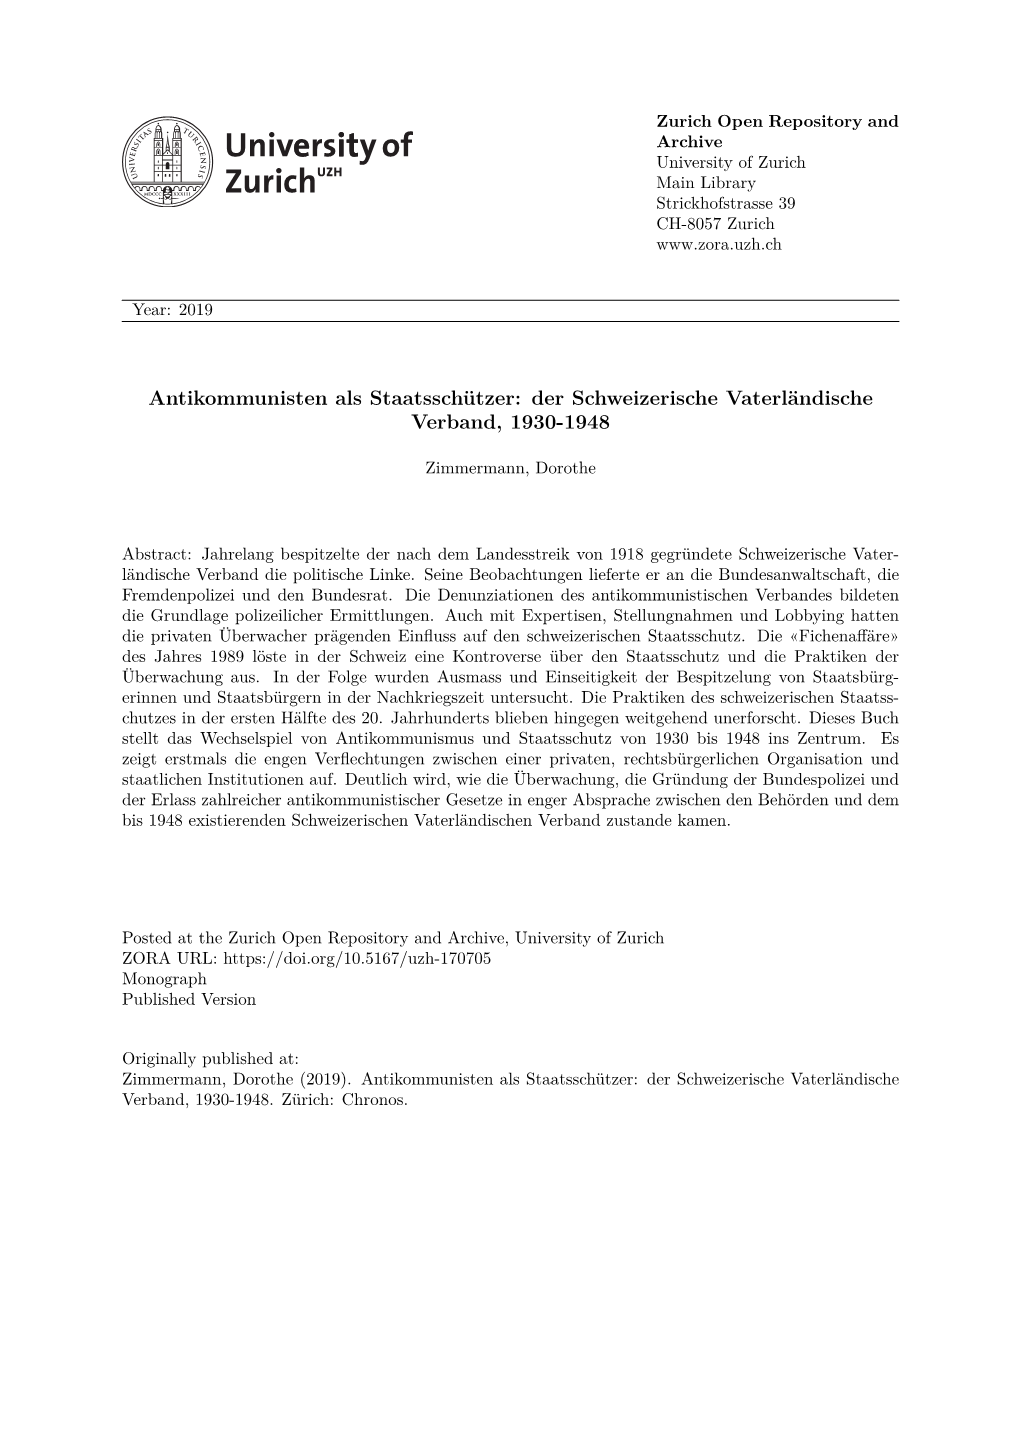 Antikommunisten Als Staatsschützer: Der Schweizerische Vaterländische Verband, 1930-1948